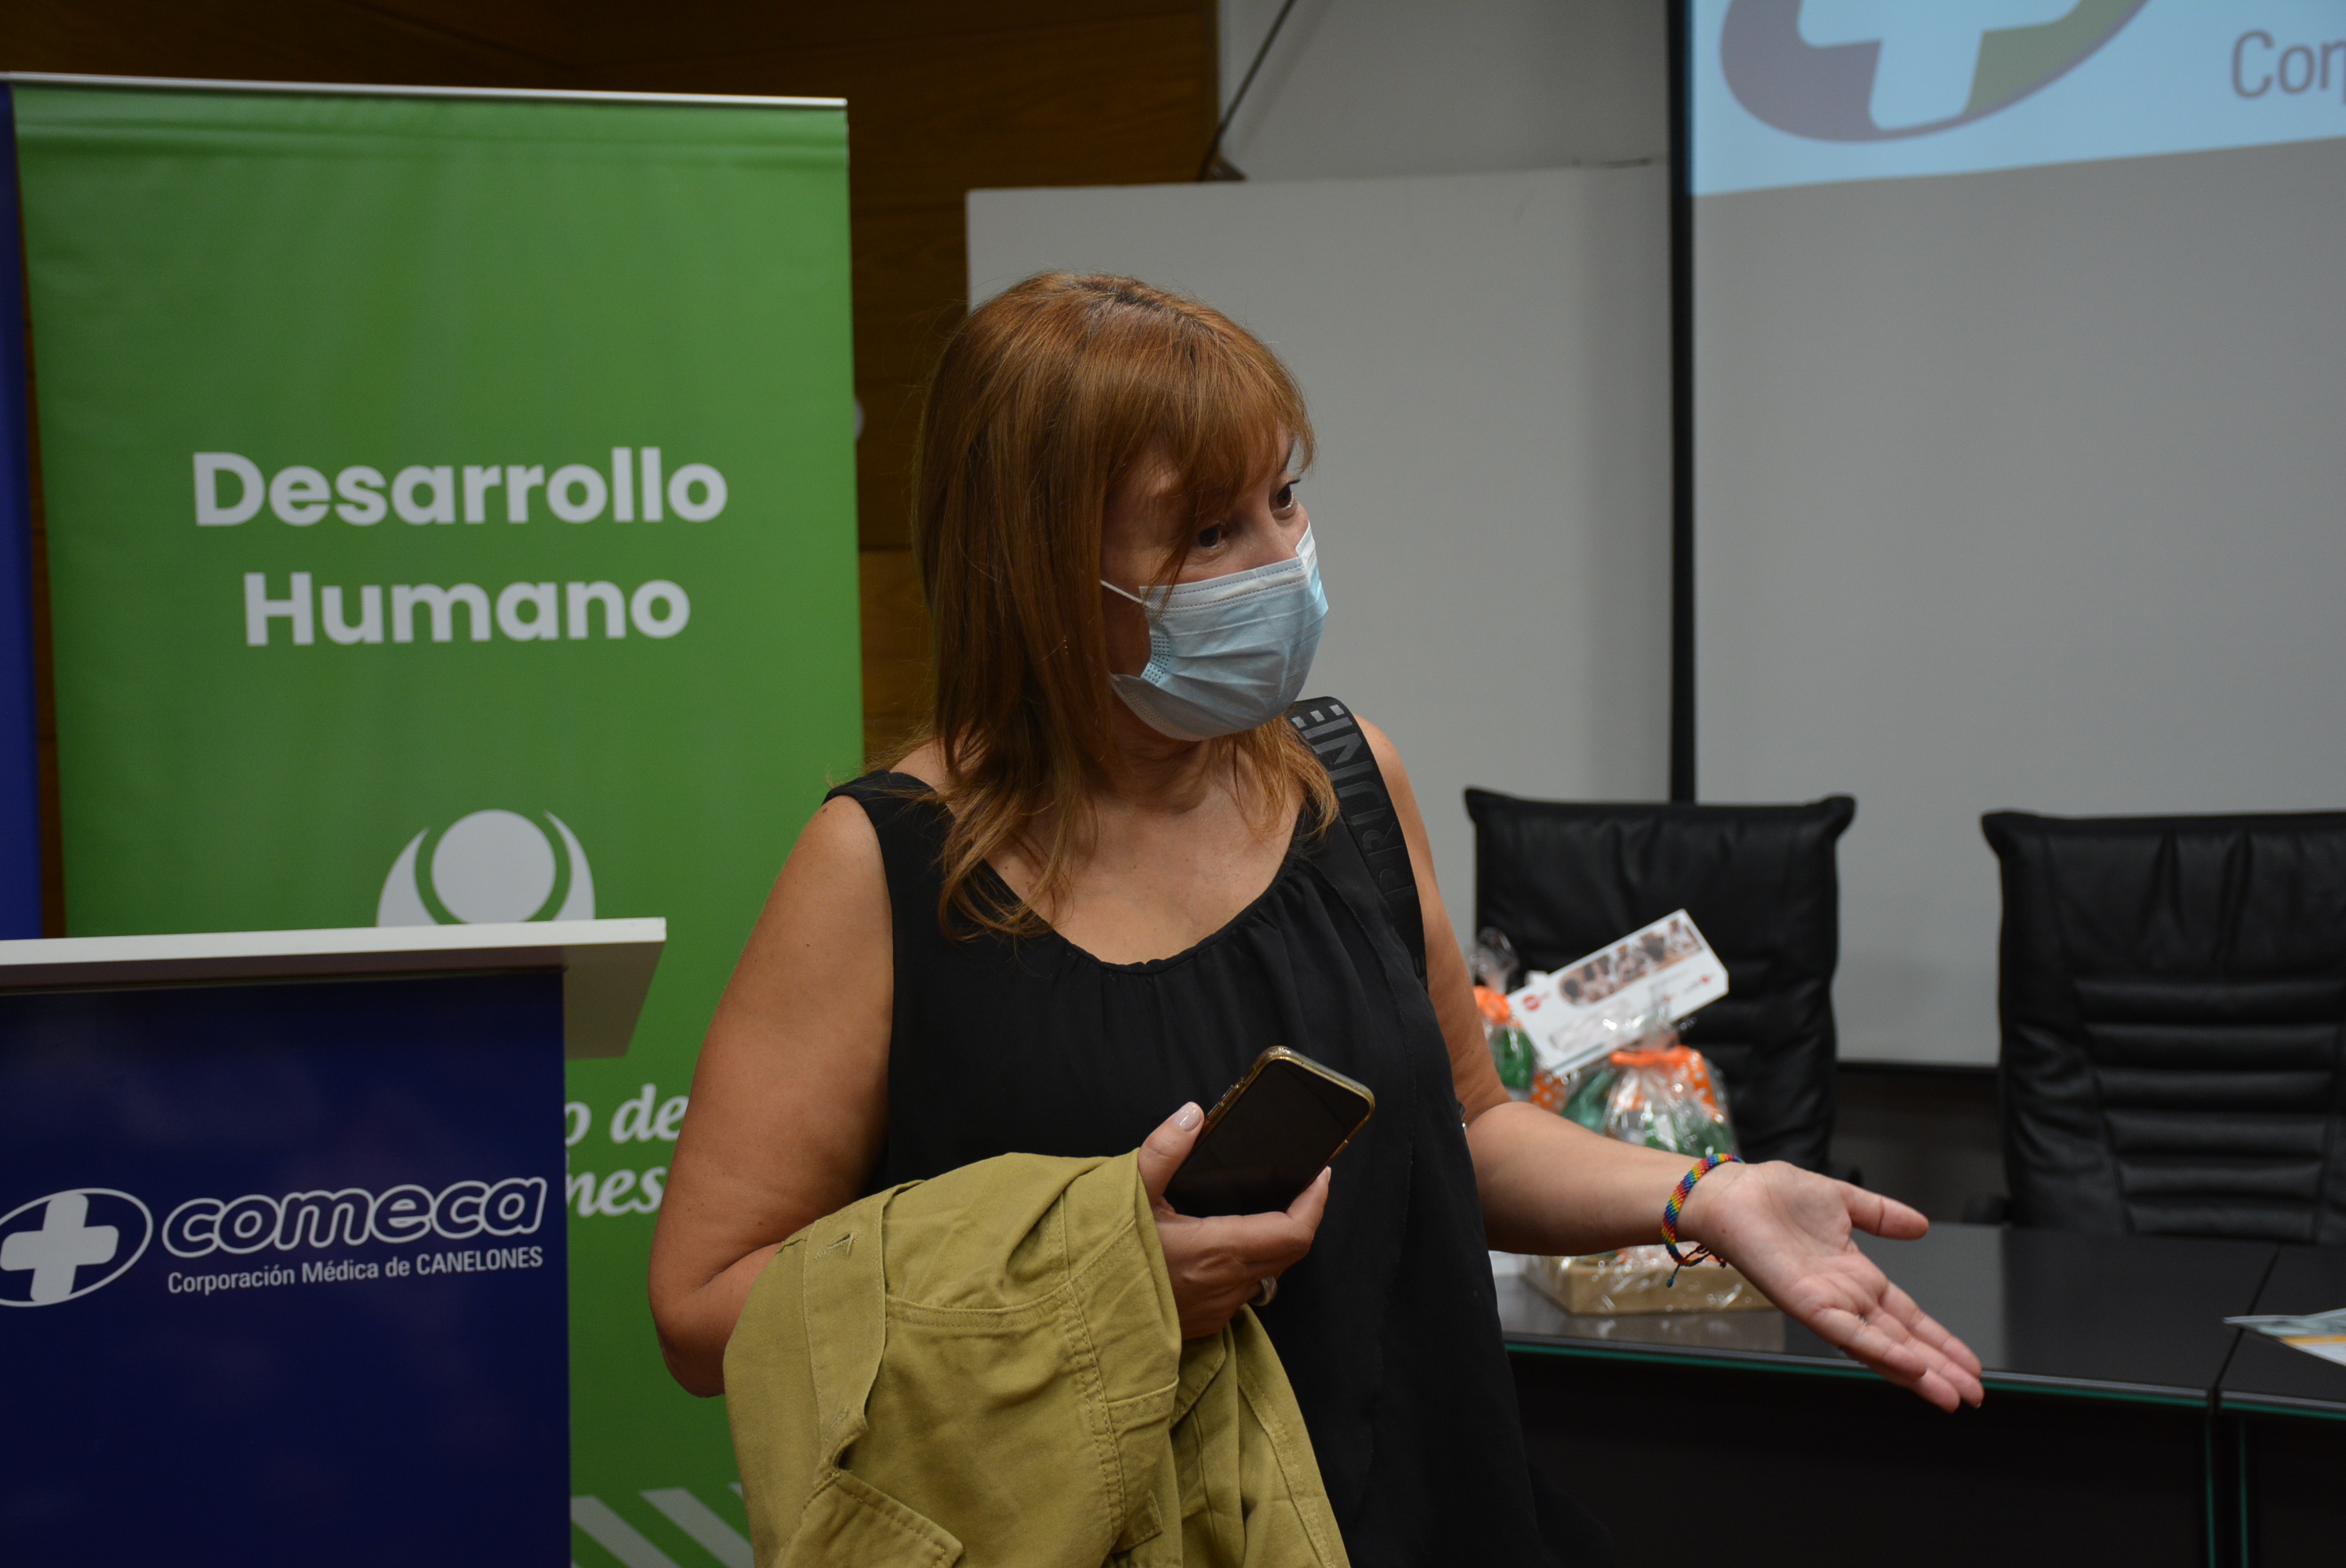  Directora General de Desarrollo Humano del Gobierno de Canelones, Prof. Gabriela Garrido, en la entrega de kits de bienvenida en el área de maternidad de Comeca, en el marco del programa 1000 días de igualdad